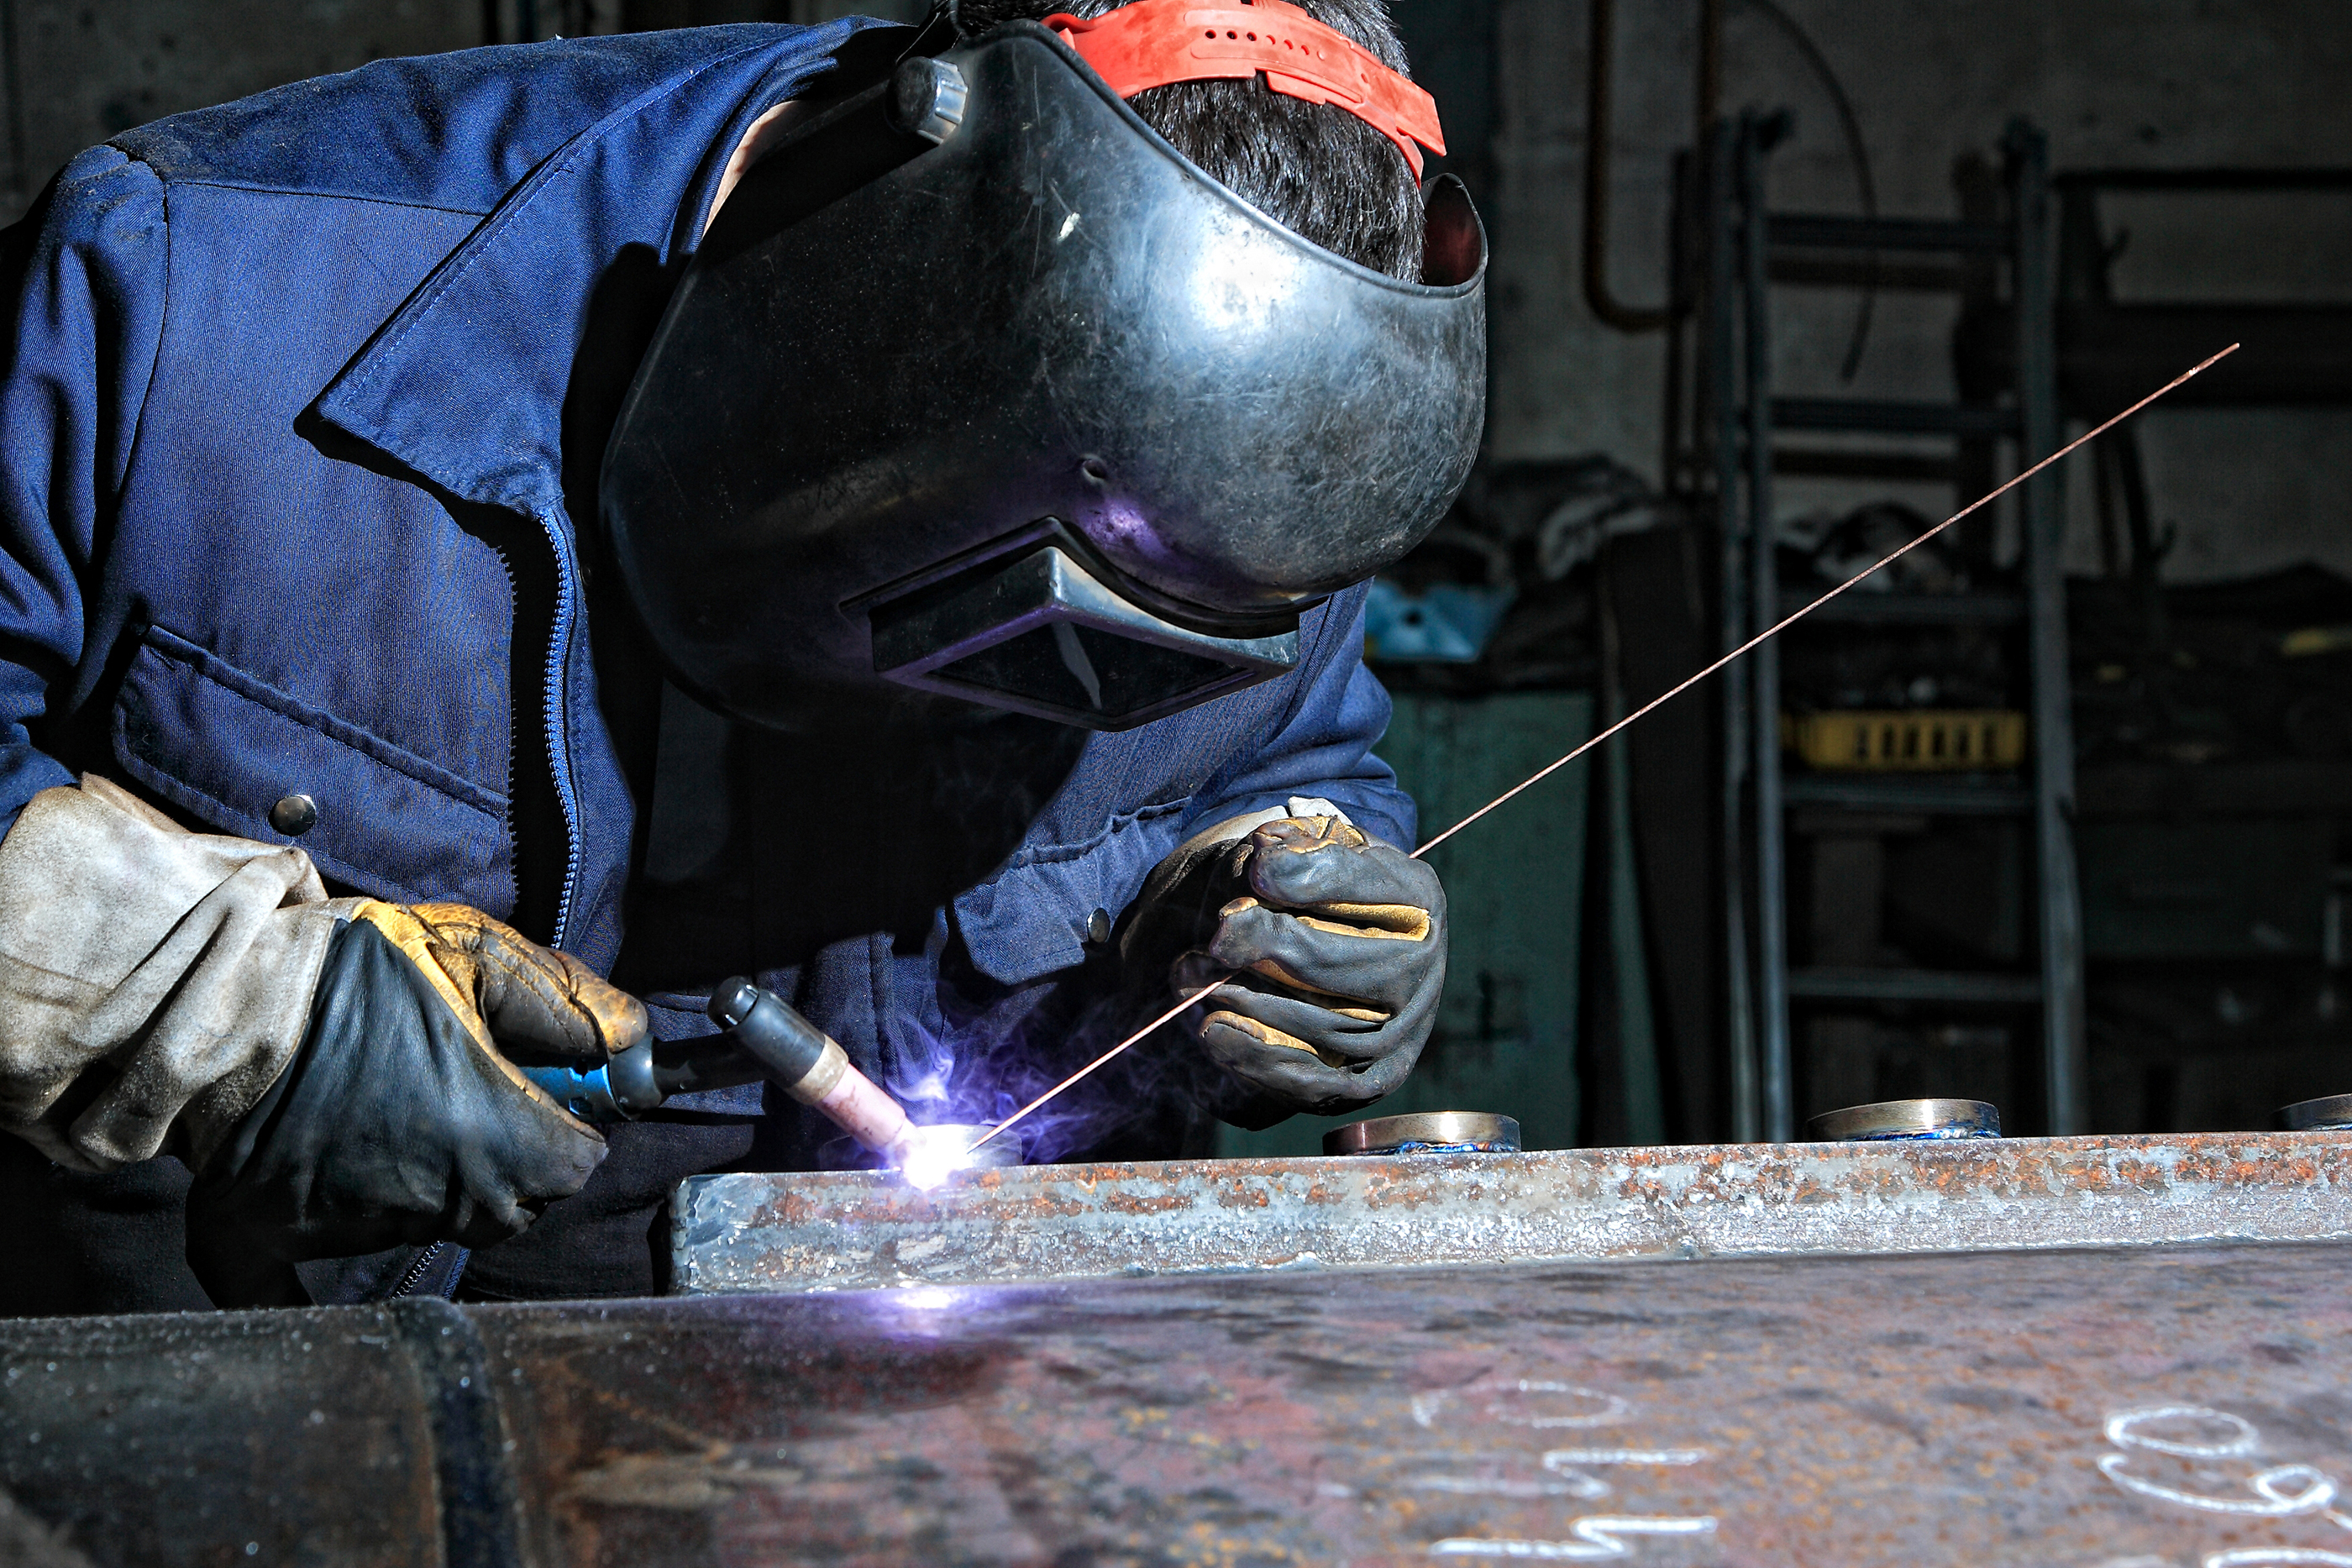 welding companies